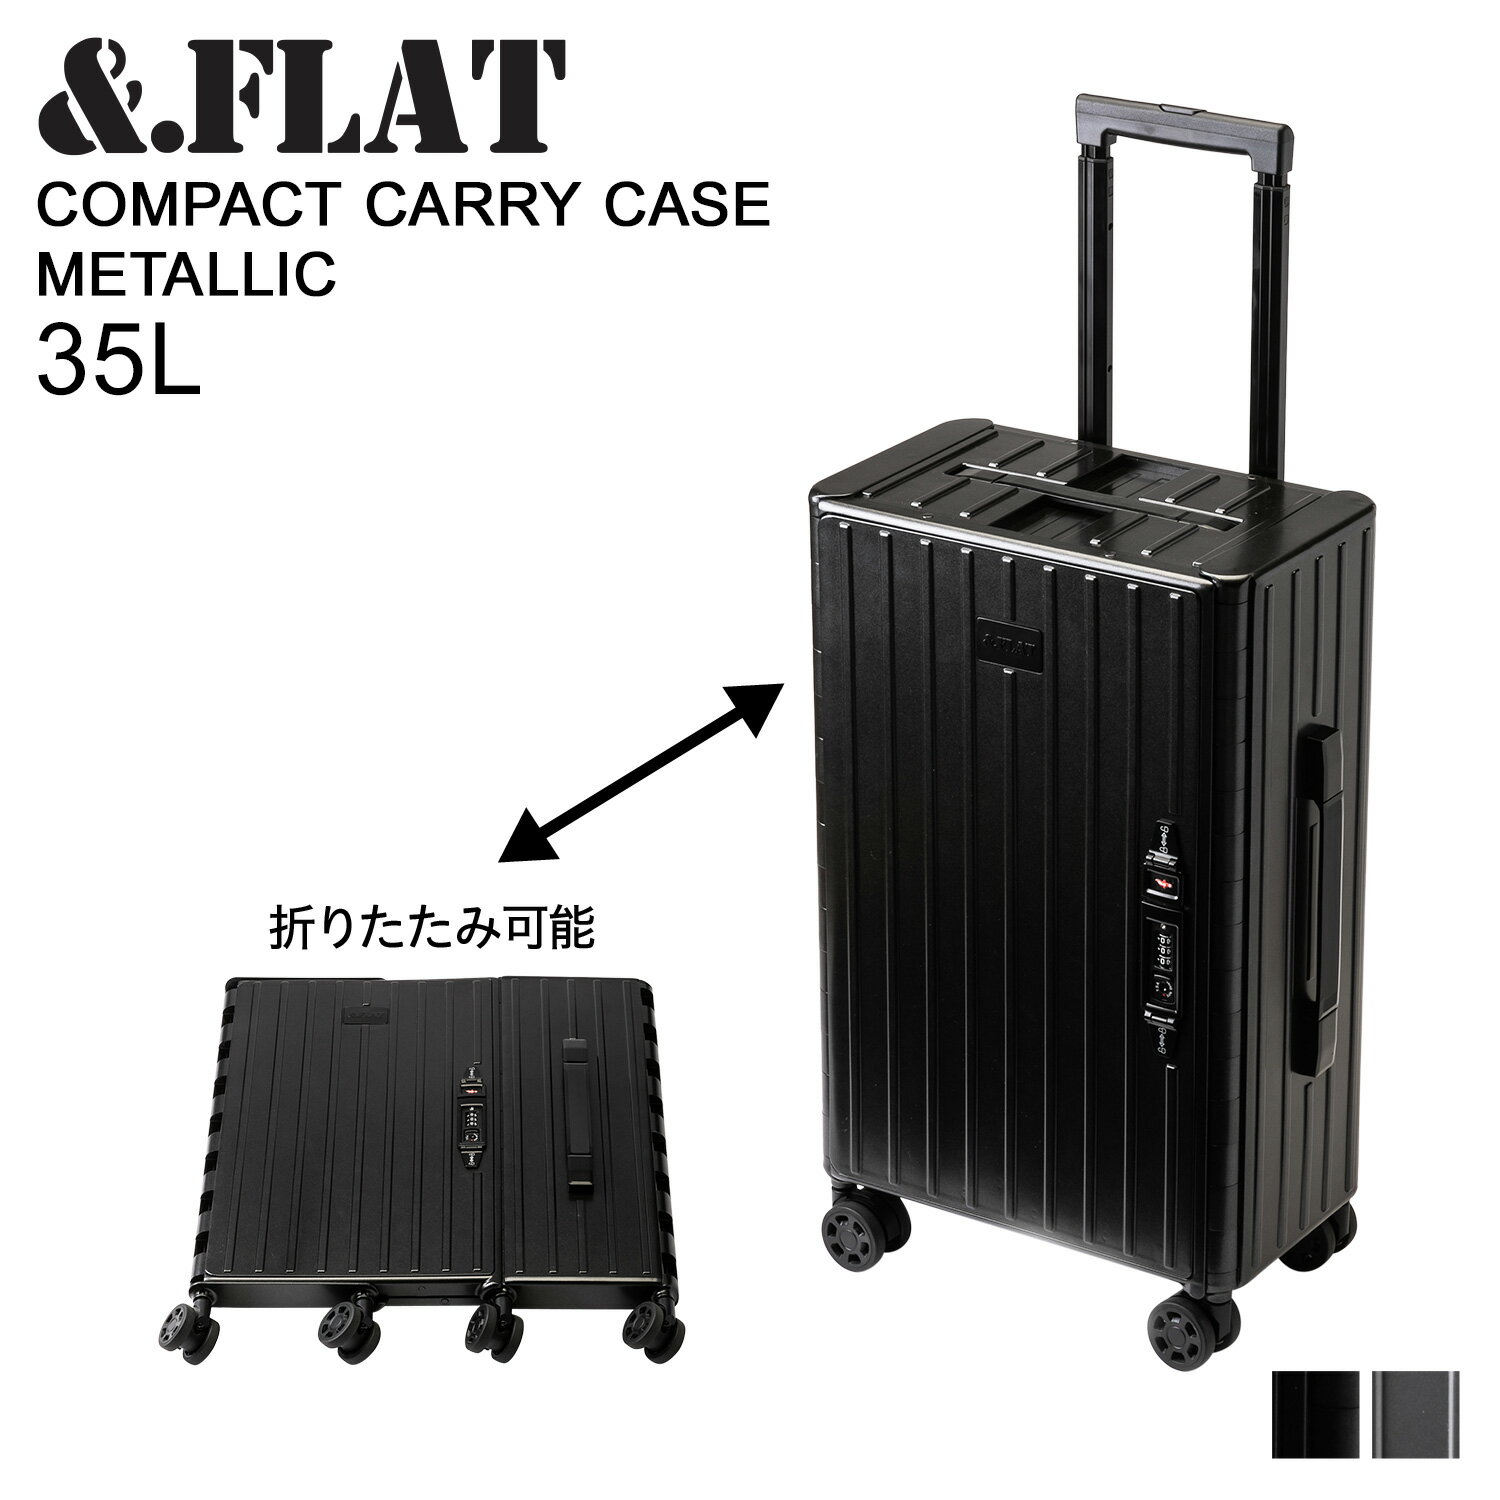 アンドフラット FLAT キャリーケース スーツケース キャリーバッグ メンズ レディース 35L 折り畳める 機内持ち込み COMPACT CARRY CASE METALLIC ブラック シルバー 黒 FL14-4-00001